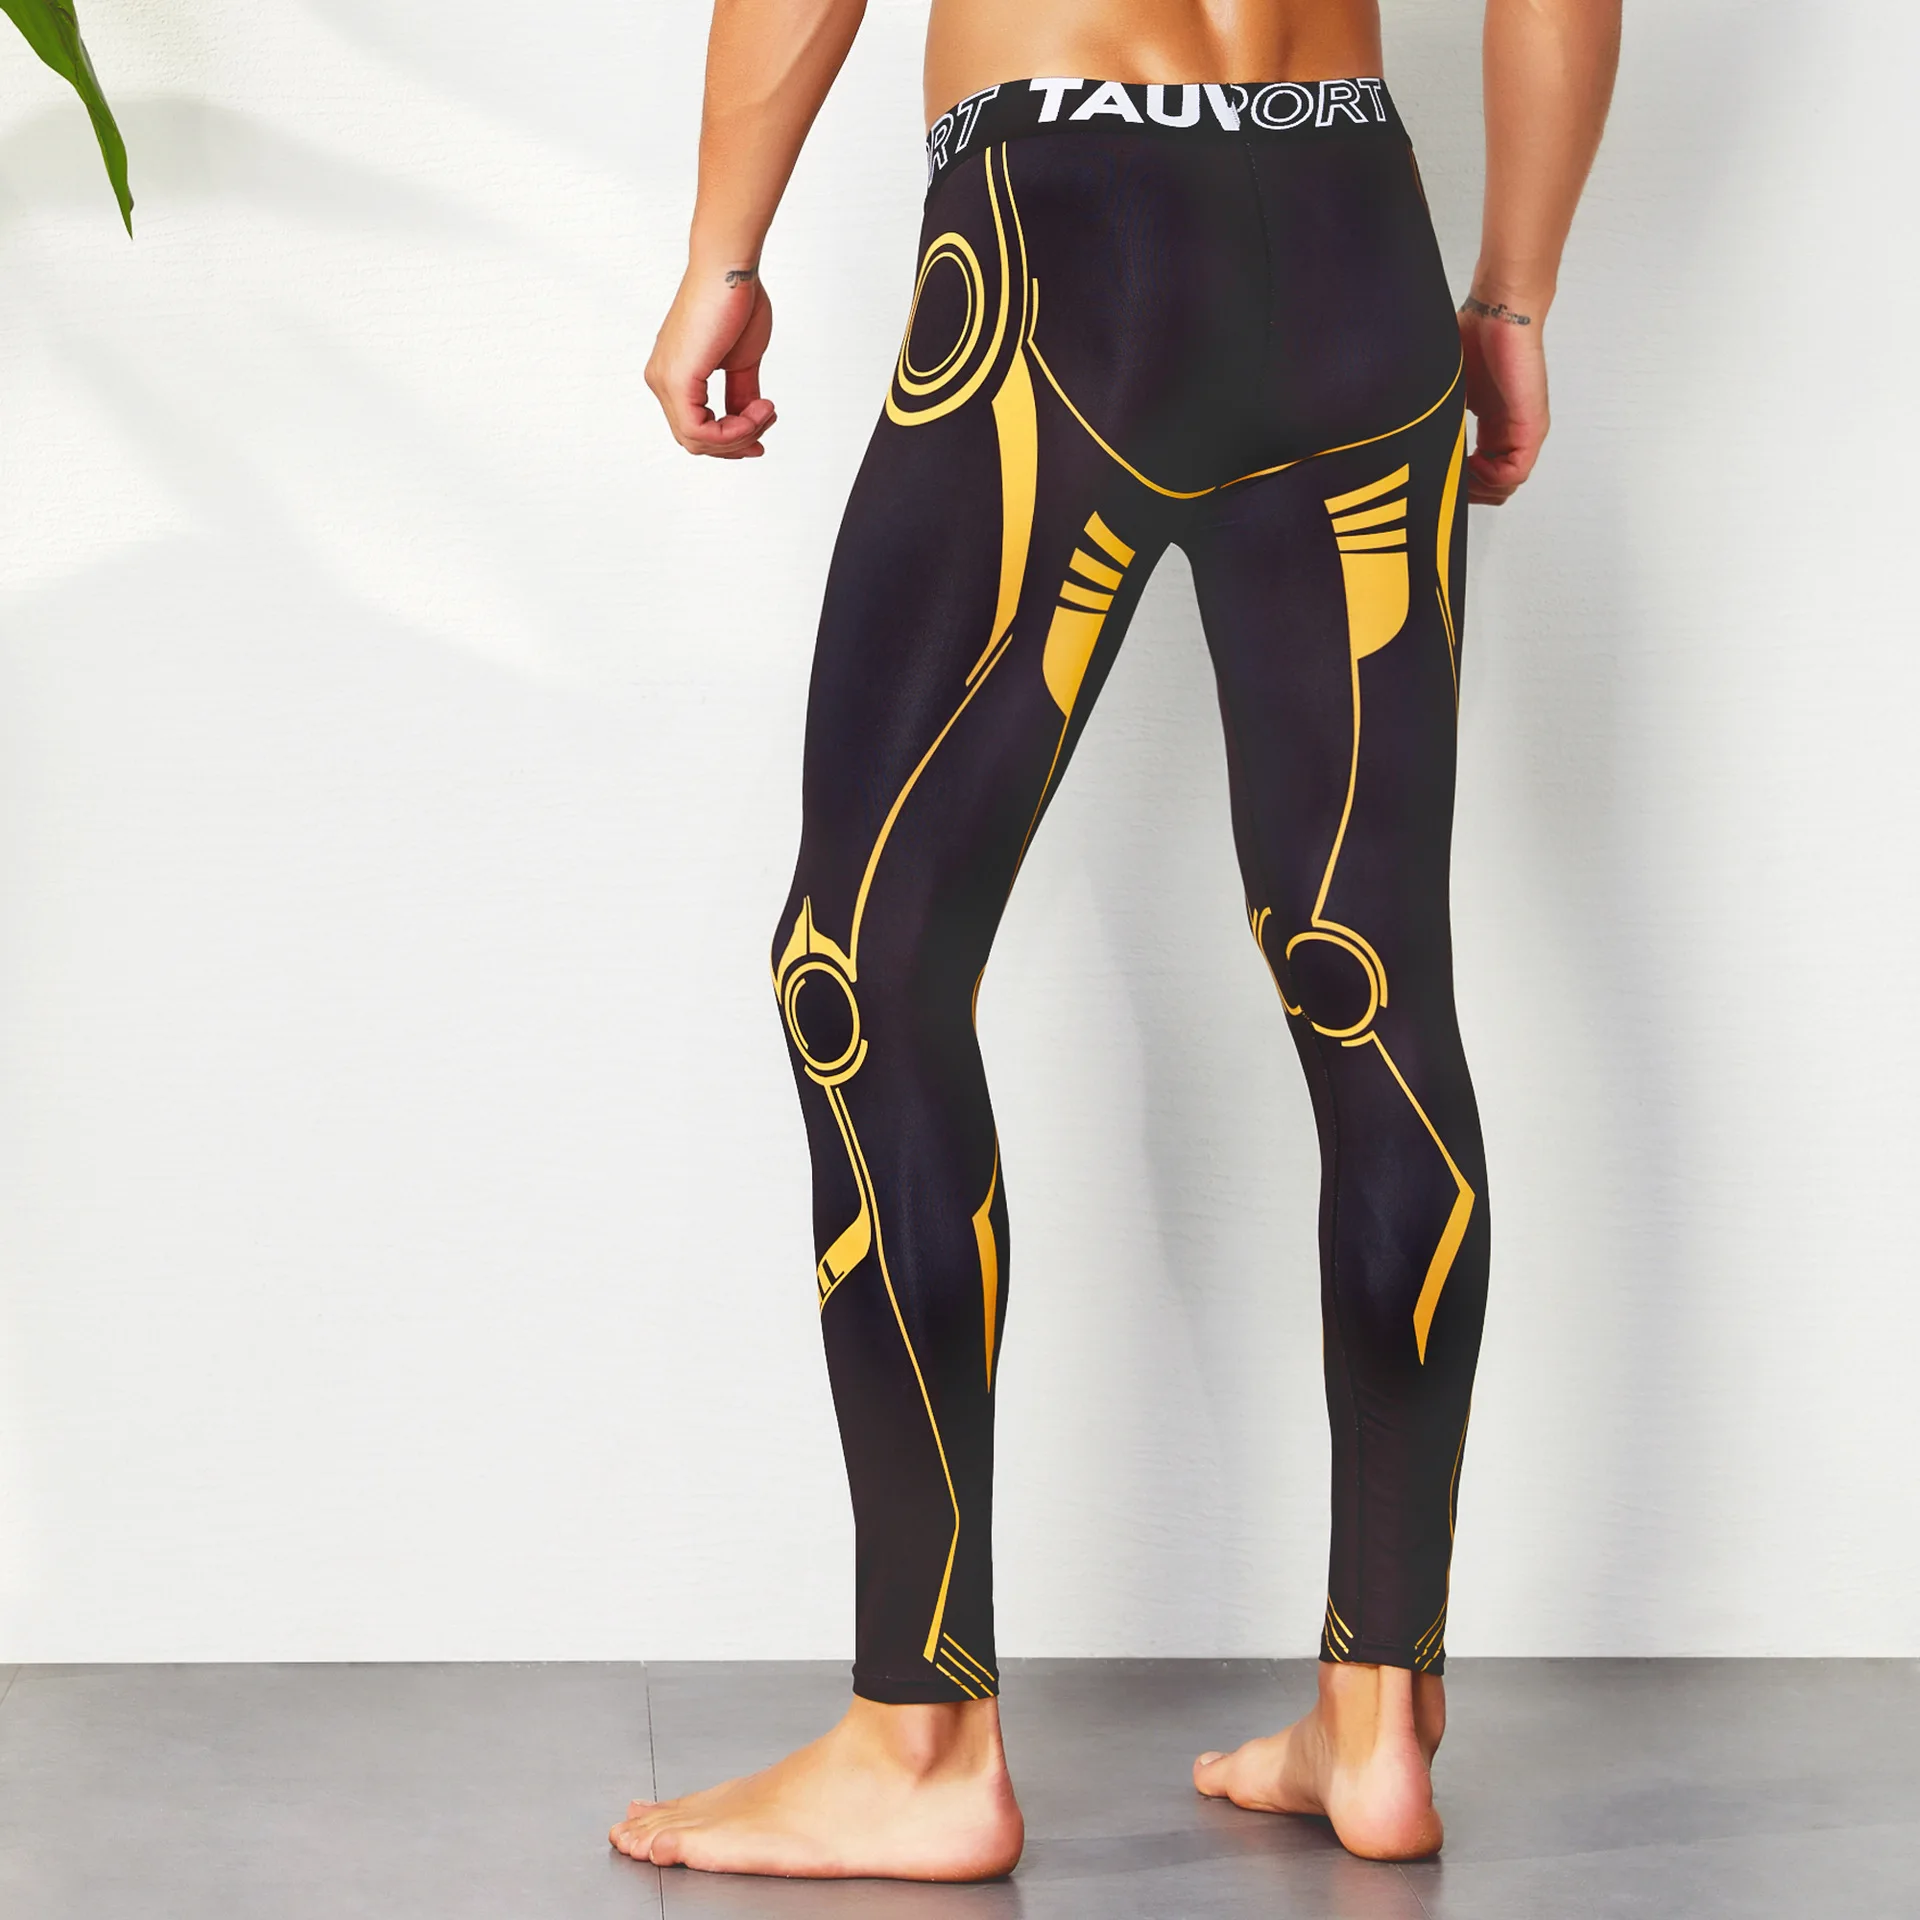 AliExpress теплые мужские спортивные Леггинсы, модные научно-технические цветные штаны для йоги, сексуальные штаны для фитнеса